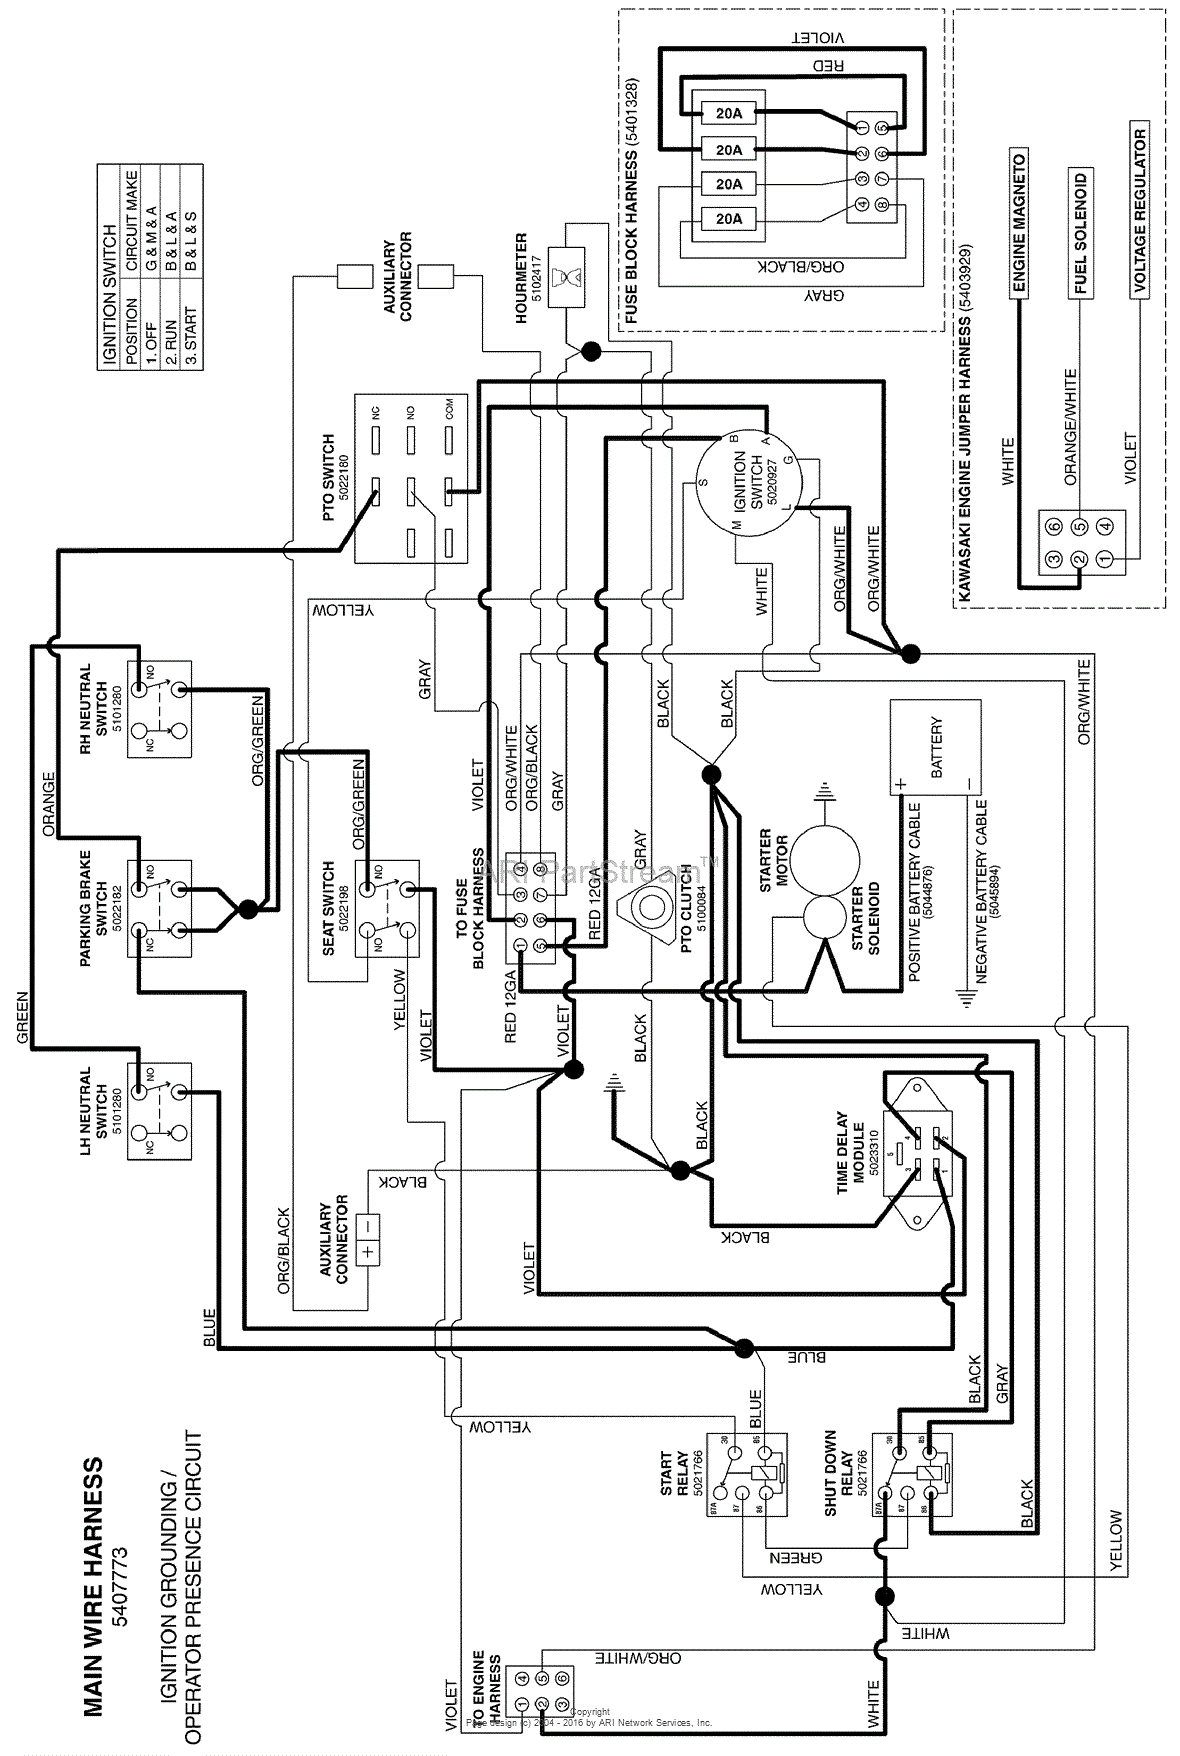 Massey Ferguson Wiring Diagram Pdf - Wiring Diagram